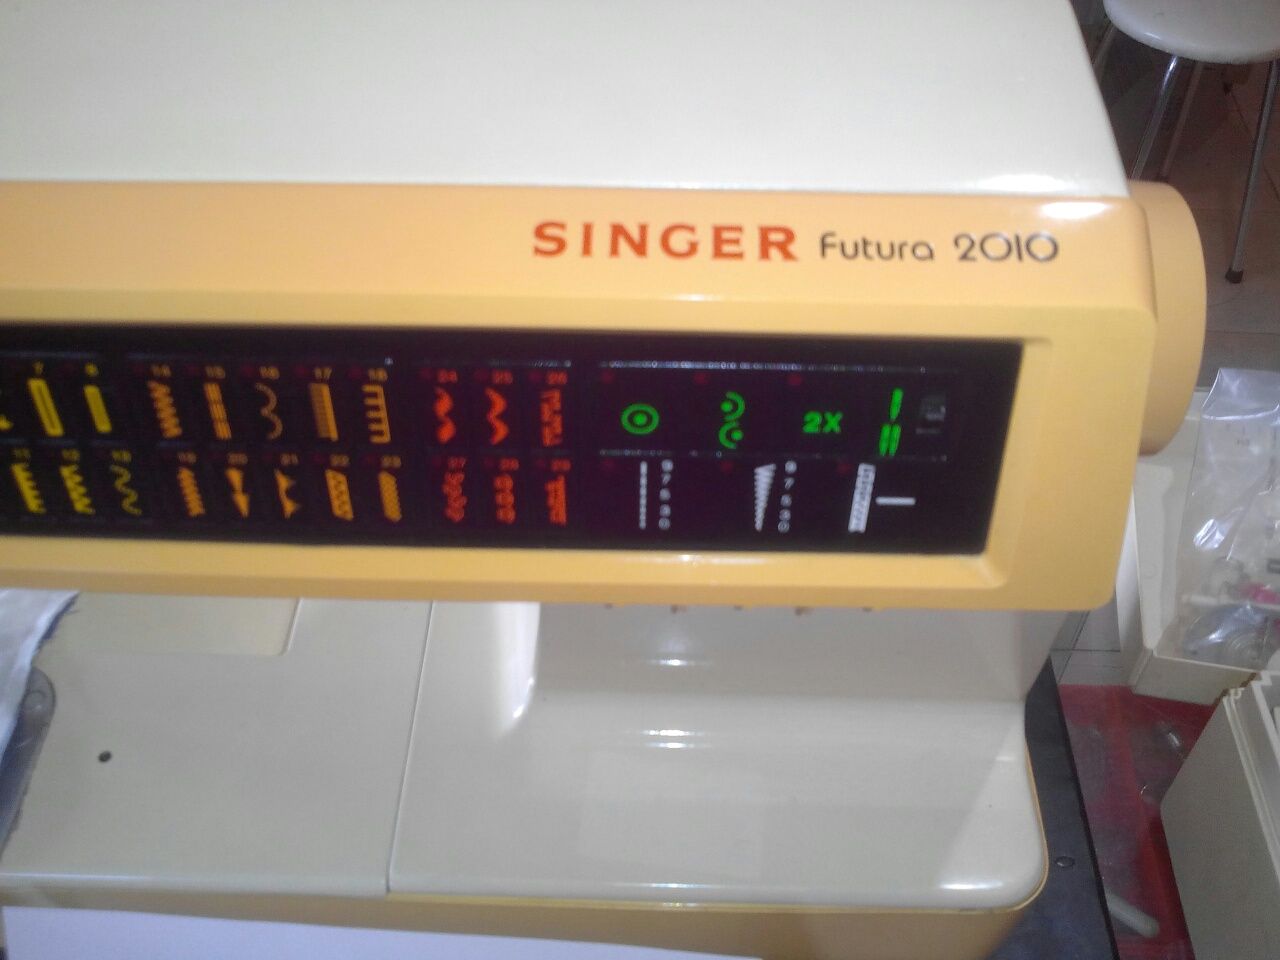 Maquina de costura foi topo de gama das máquinas costura da Singer